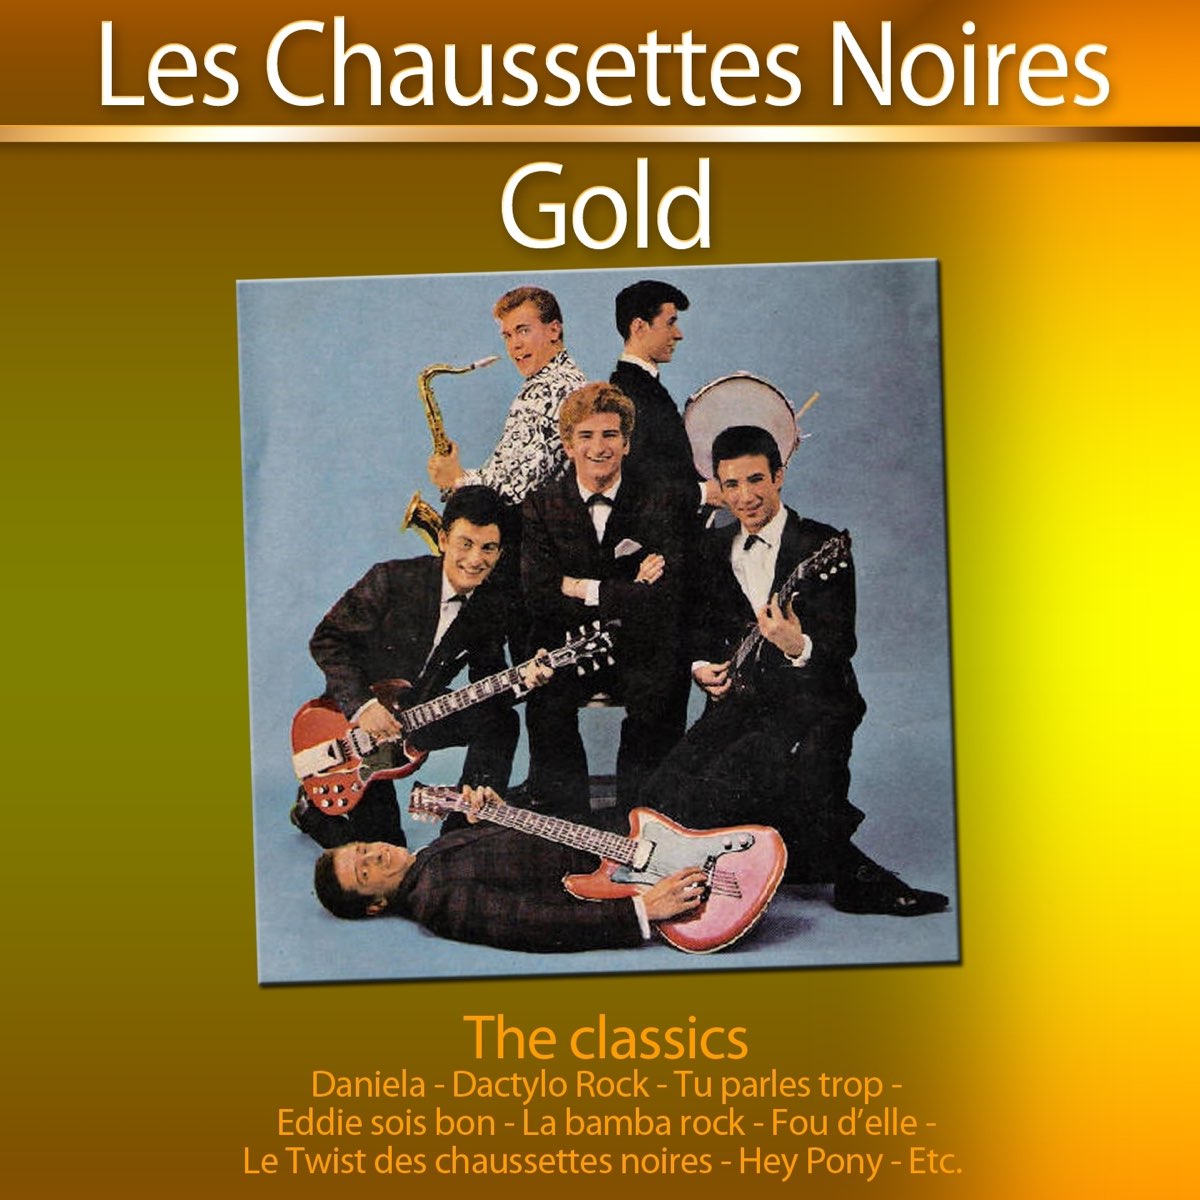 Gold The Classics: Les Chaussettes Noires - Album by Les Chaussettes Noires  - Apple Music